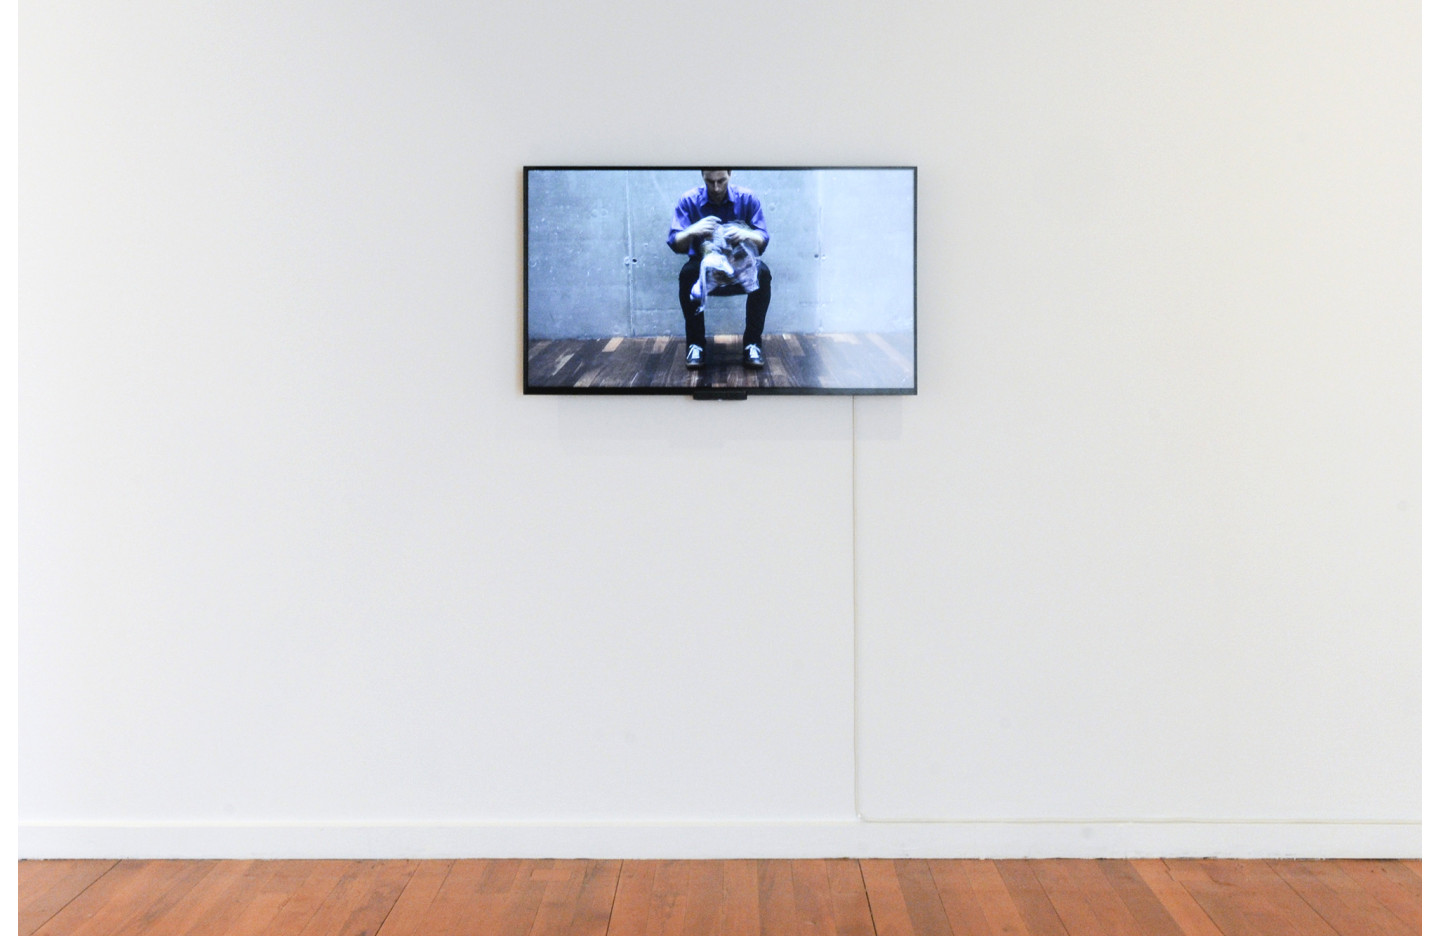 Jim Allen’s News, Ramp Gallery (2014)